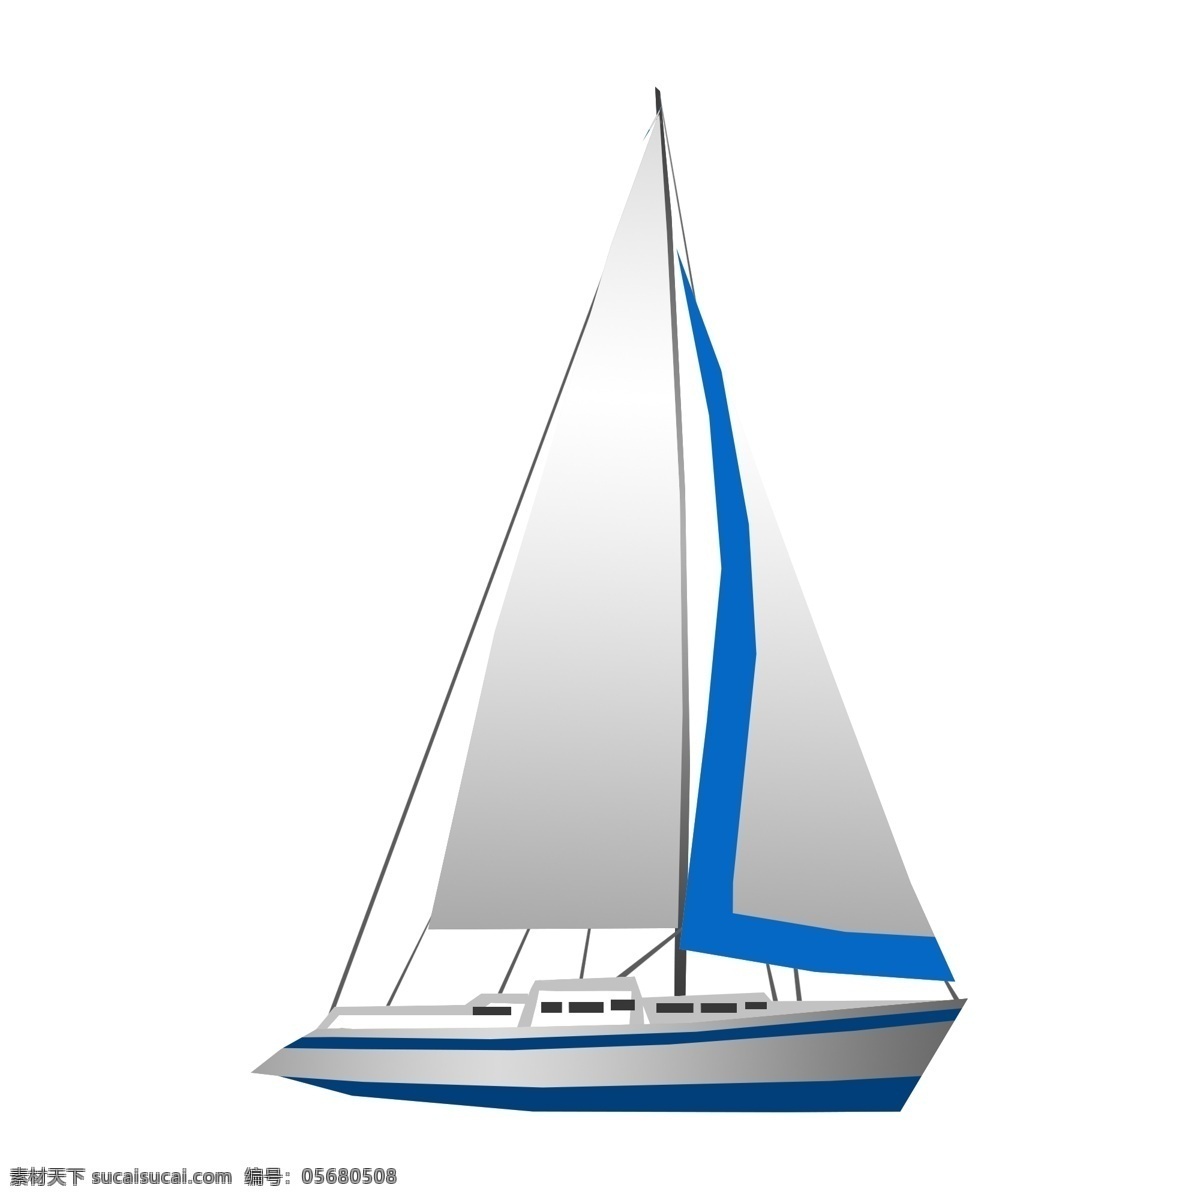 蓝灰色 帆船 手绘 插画 手绘帆船 轮船 游艇 海边 航海 蓝灰色帆船 帆船插画 打鱼 航行的小帆船 坐船